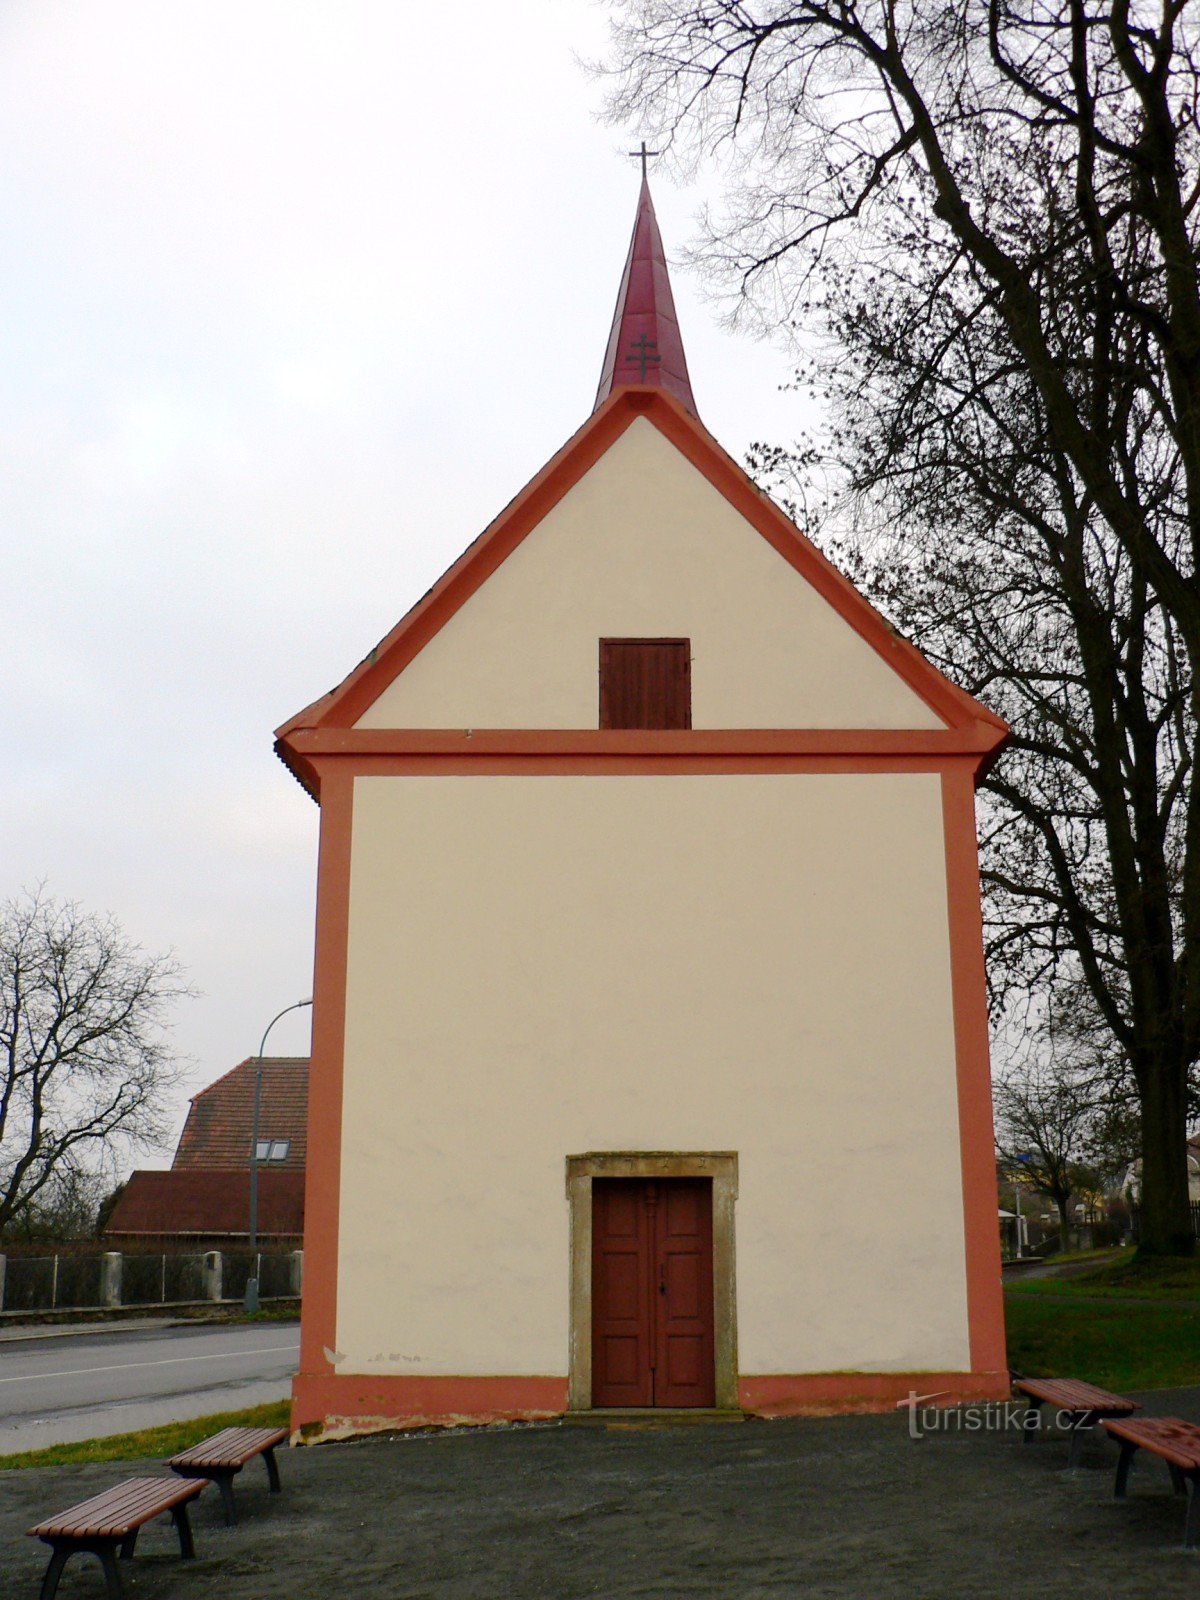 Nové Strašecí - chapel of St. Isidore